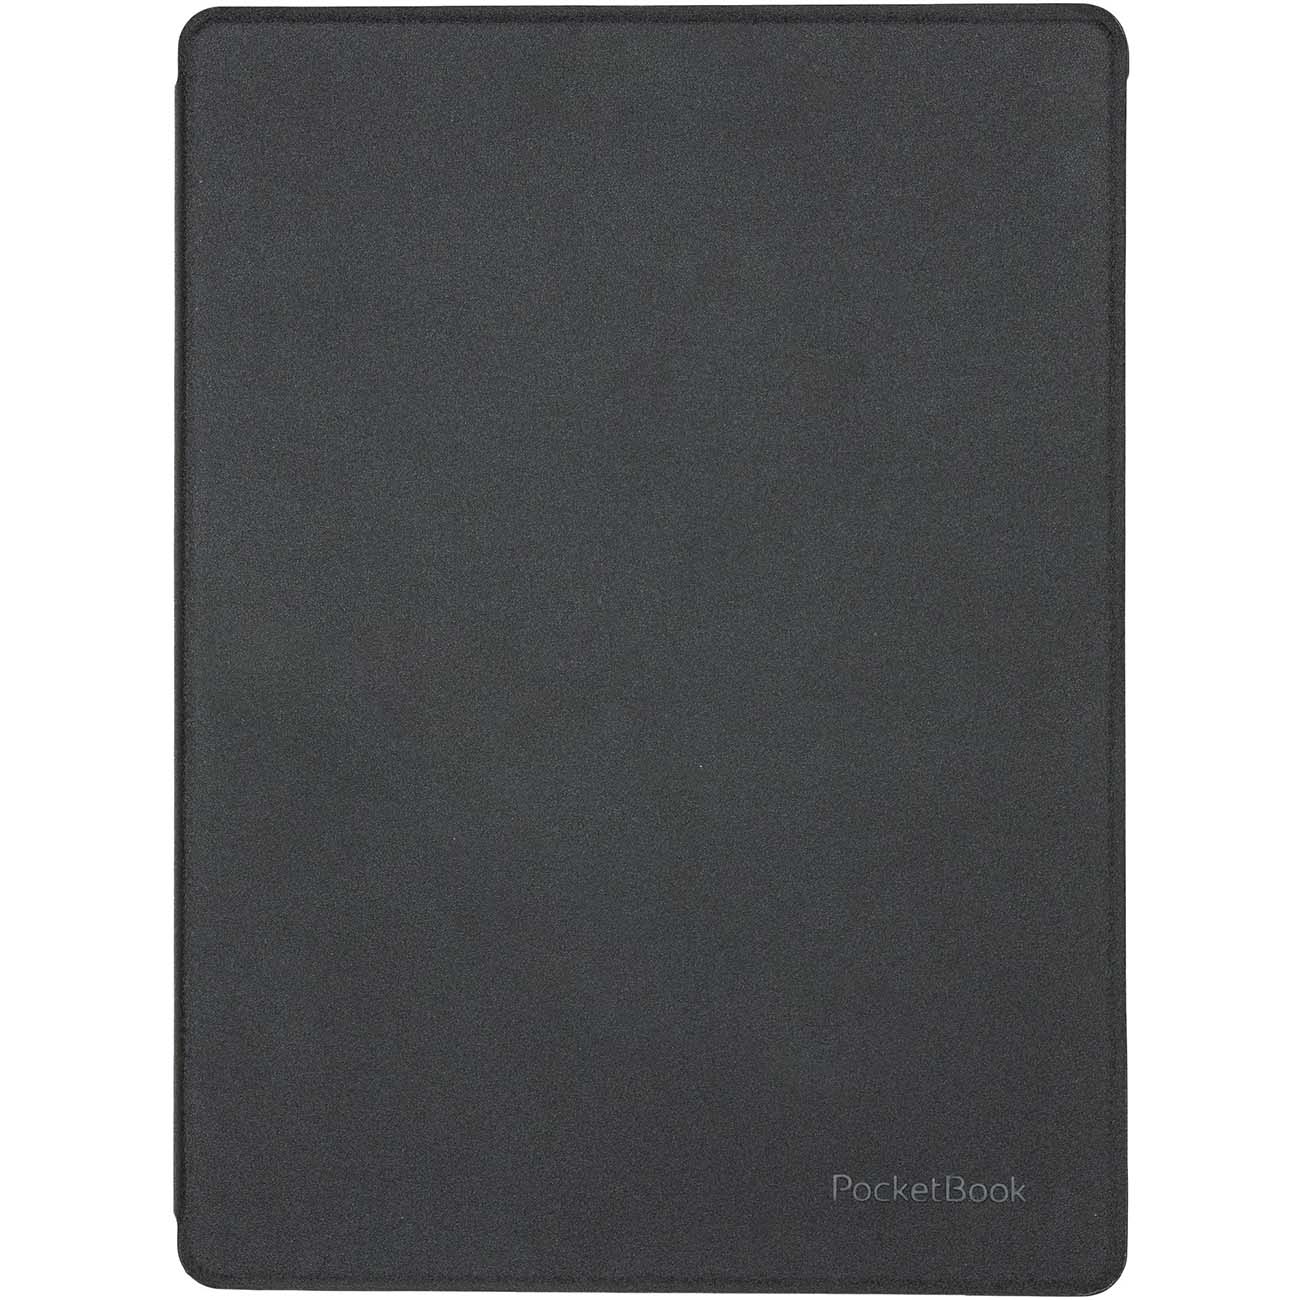 Оригинальная обложка для Pocketbook 970 (HN-SL-PU-970-BK-WW) shell-cover черный